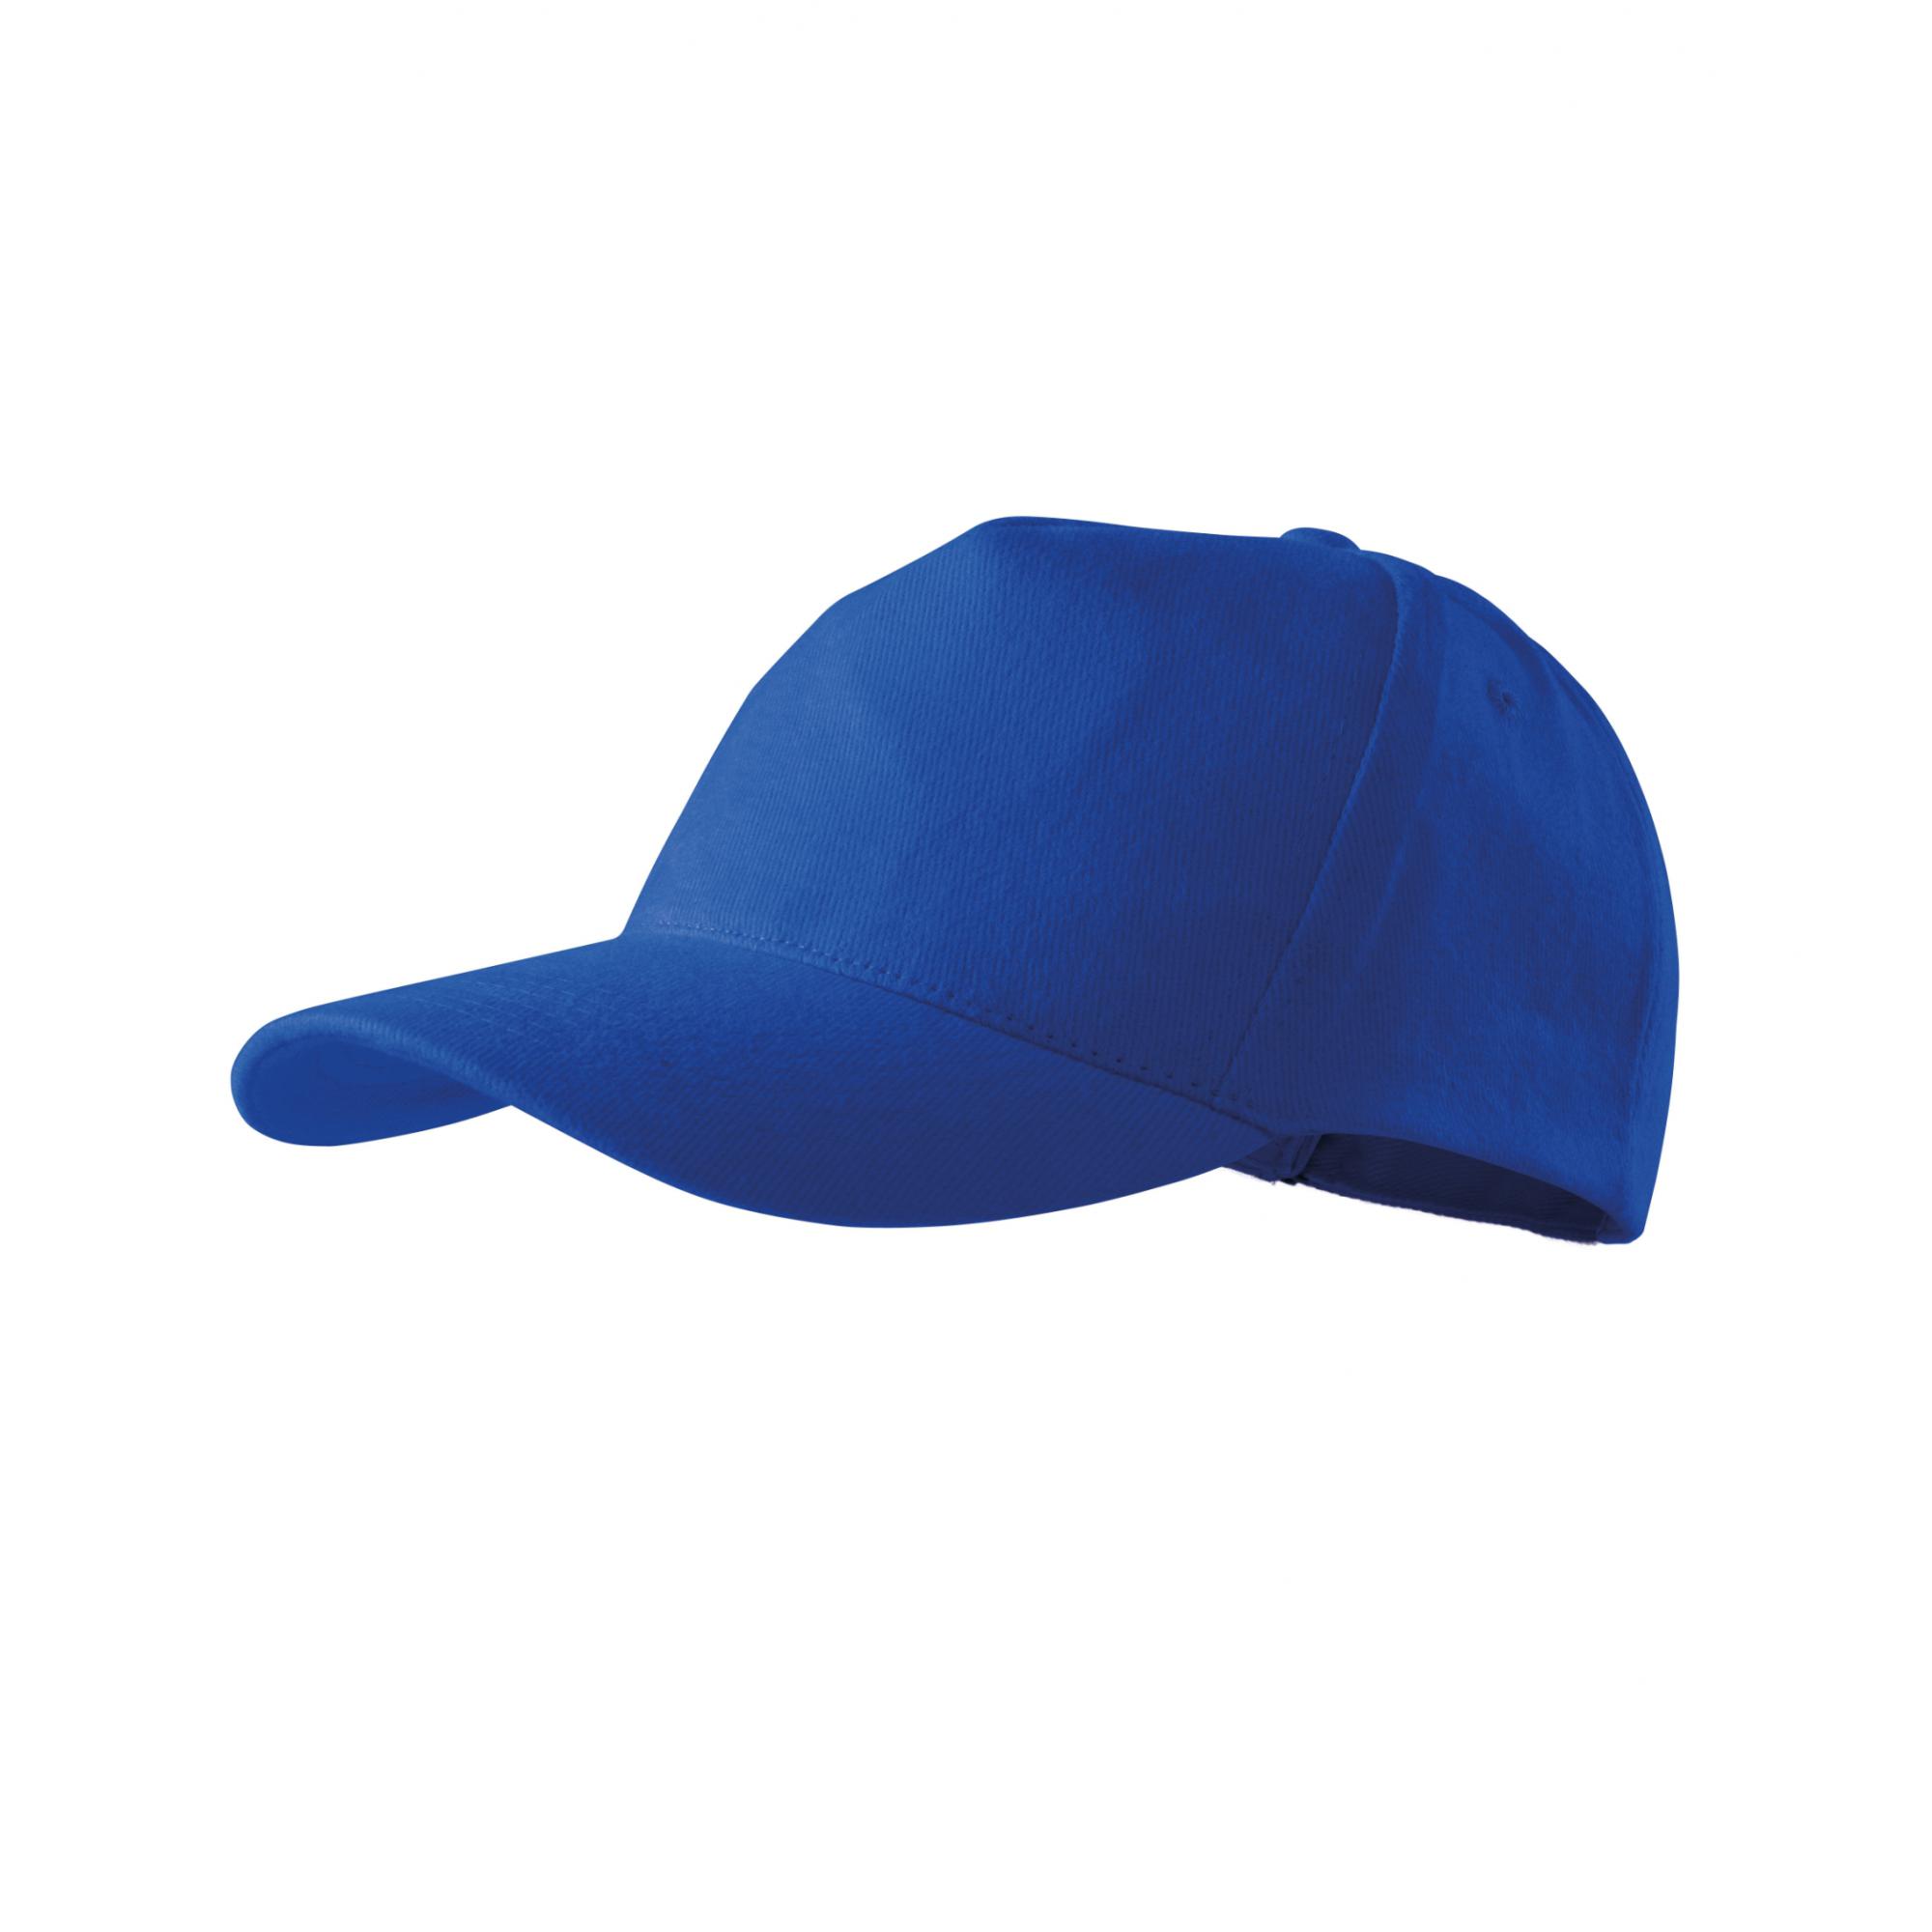 Şapcă unisex 5P 307 Albastru regal Marime universala